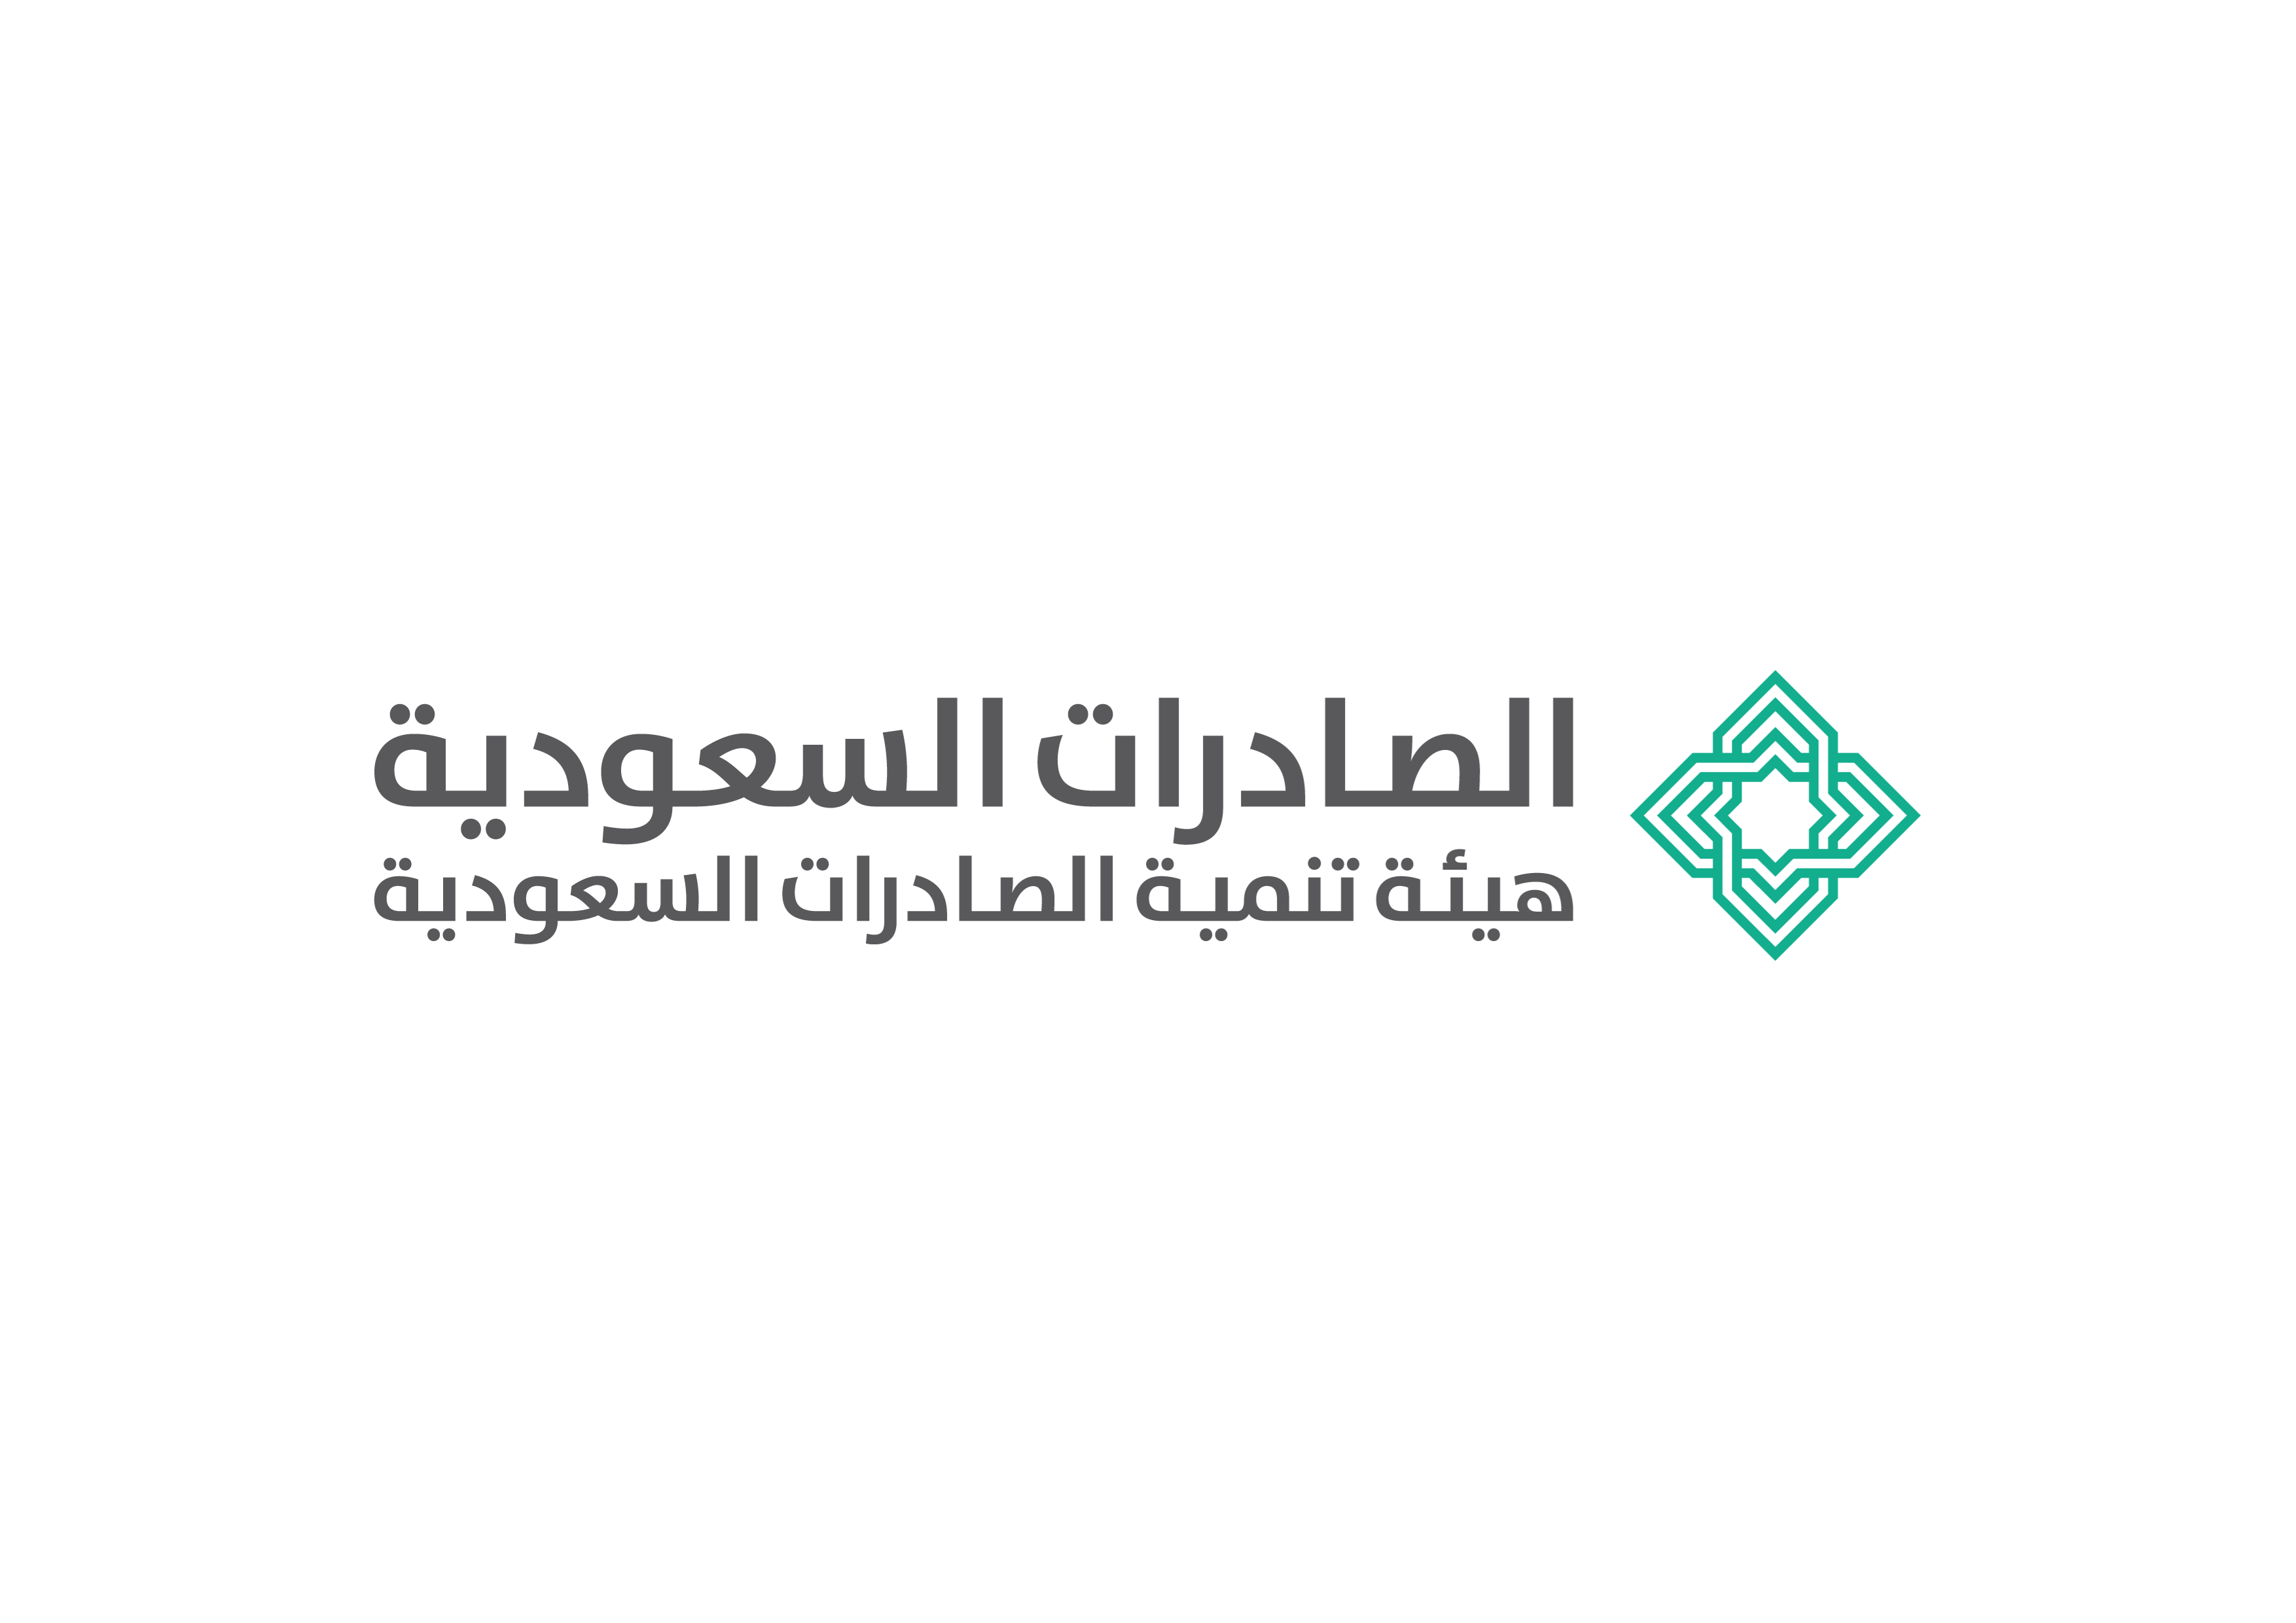 ​57 شركة سعودية تشارك في معرض "الخمسة الكبار 2017" في دبي